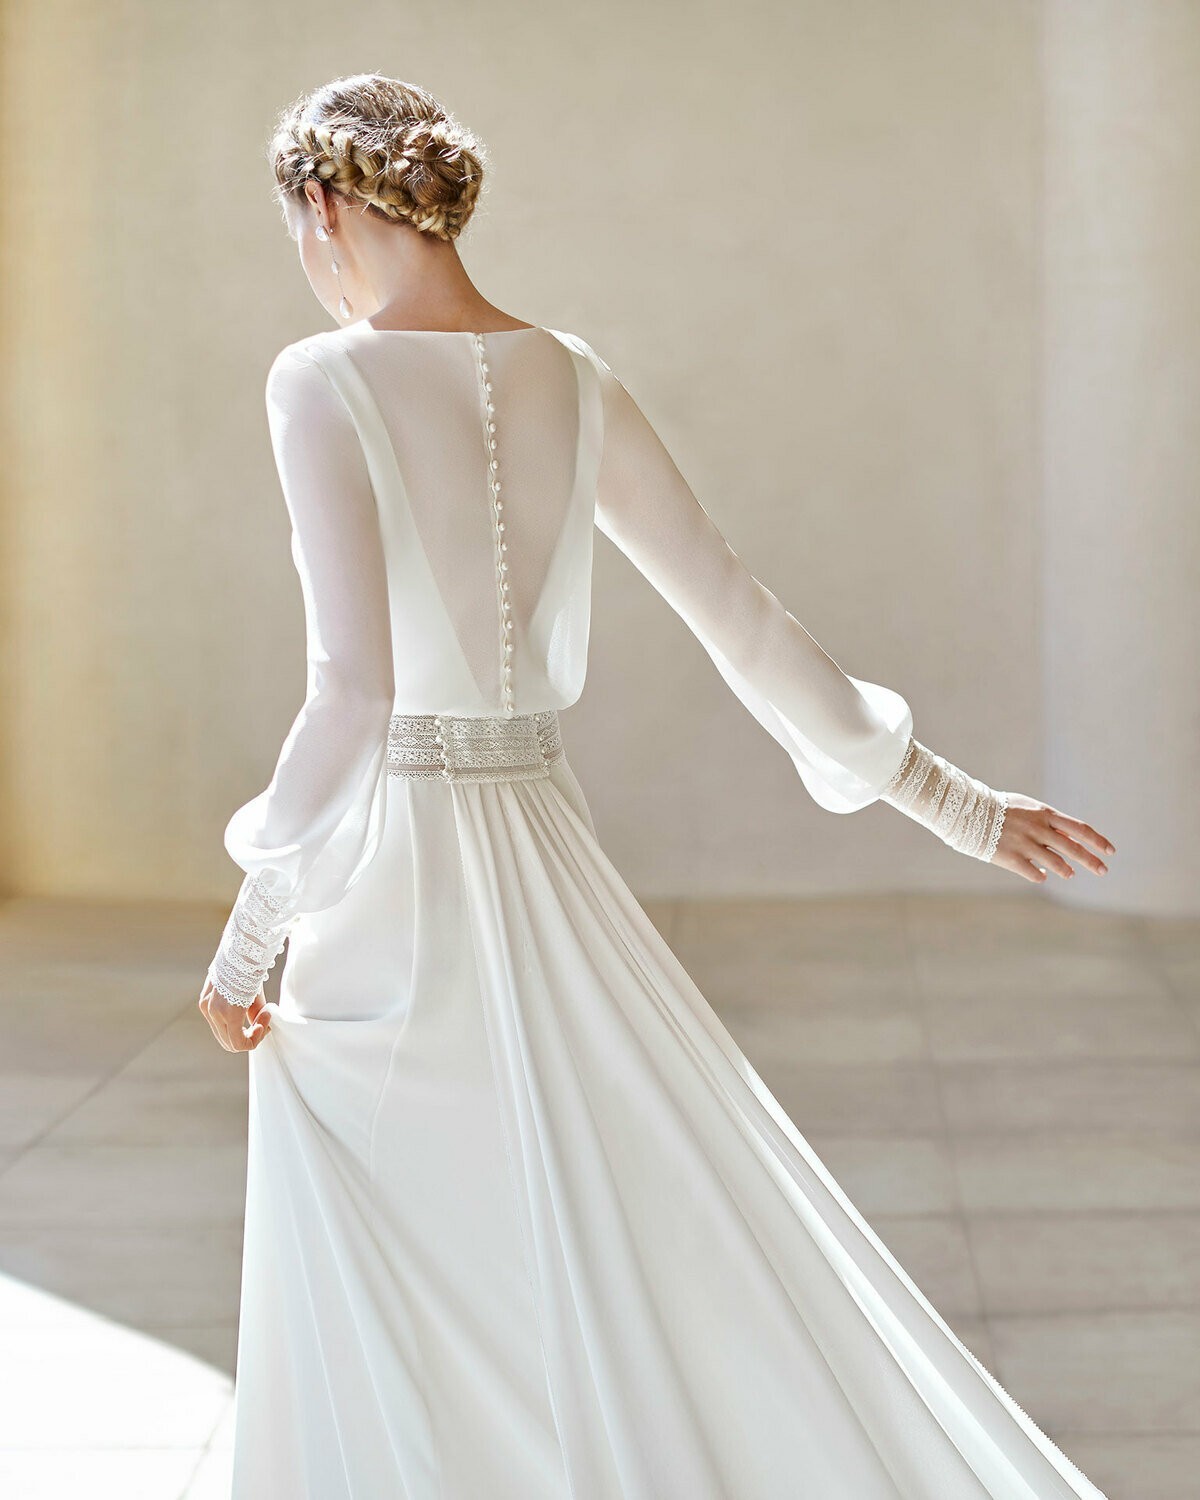 SAHEL - abito da sposa collezione 2020 - Rosa Clarà Couture